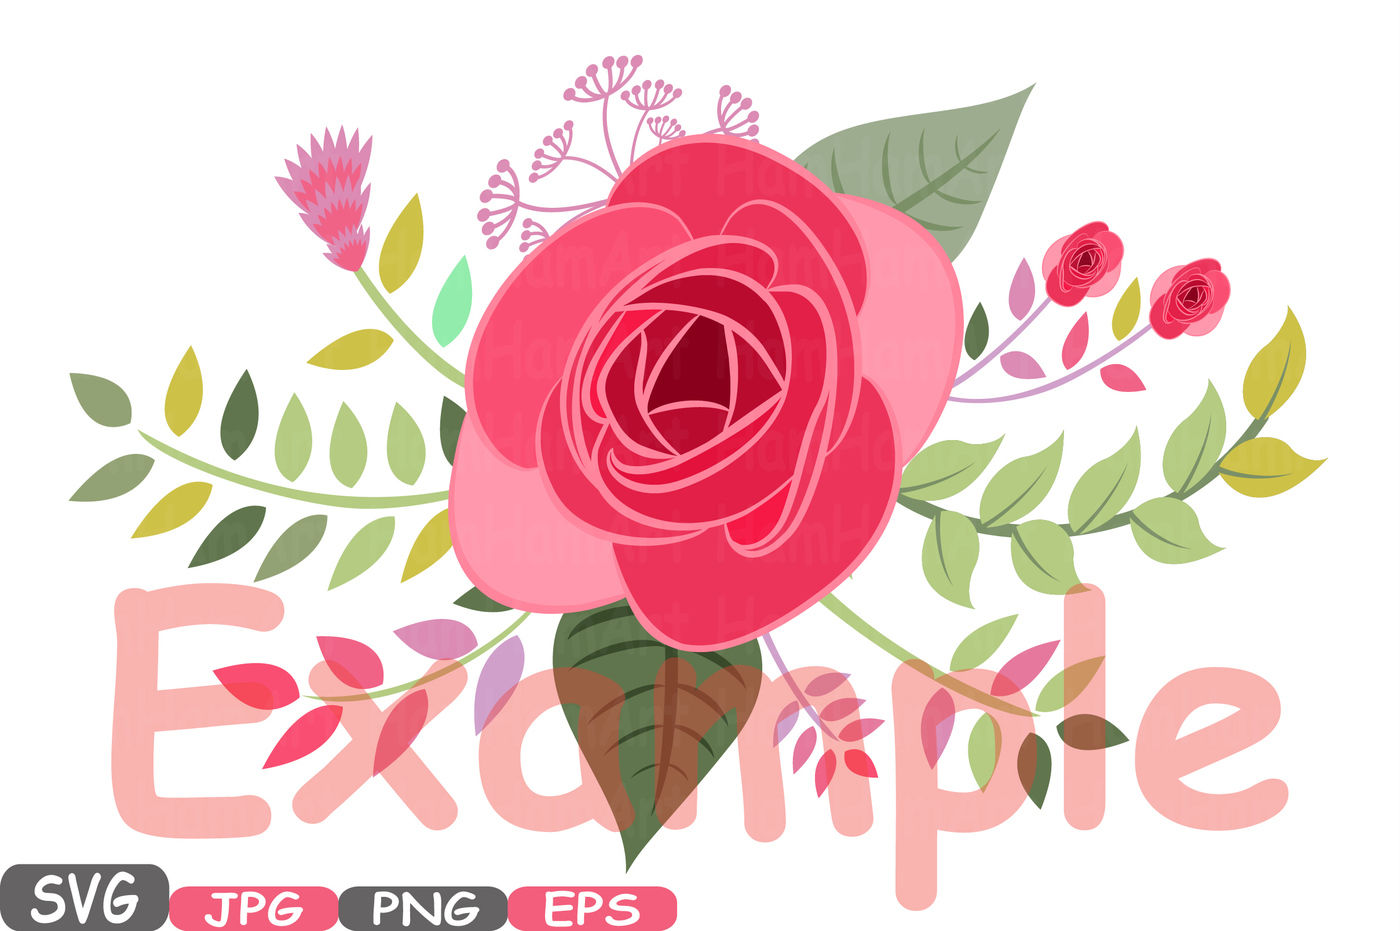 Pink Floral Invitation Background in Illustrator, EPS, JPG, SVG